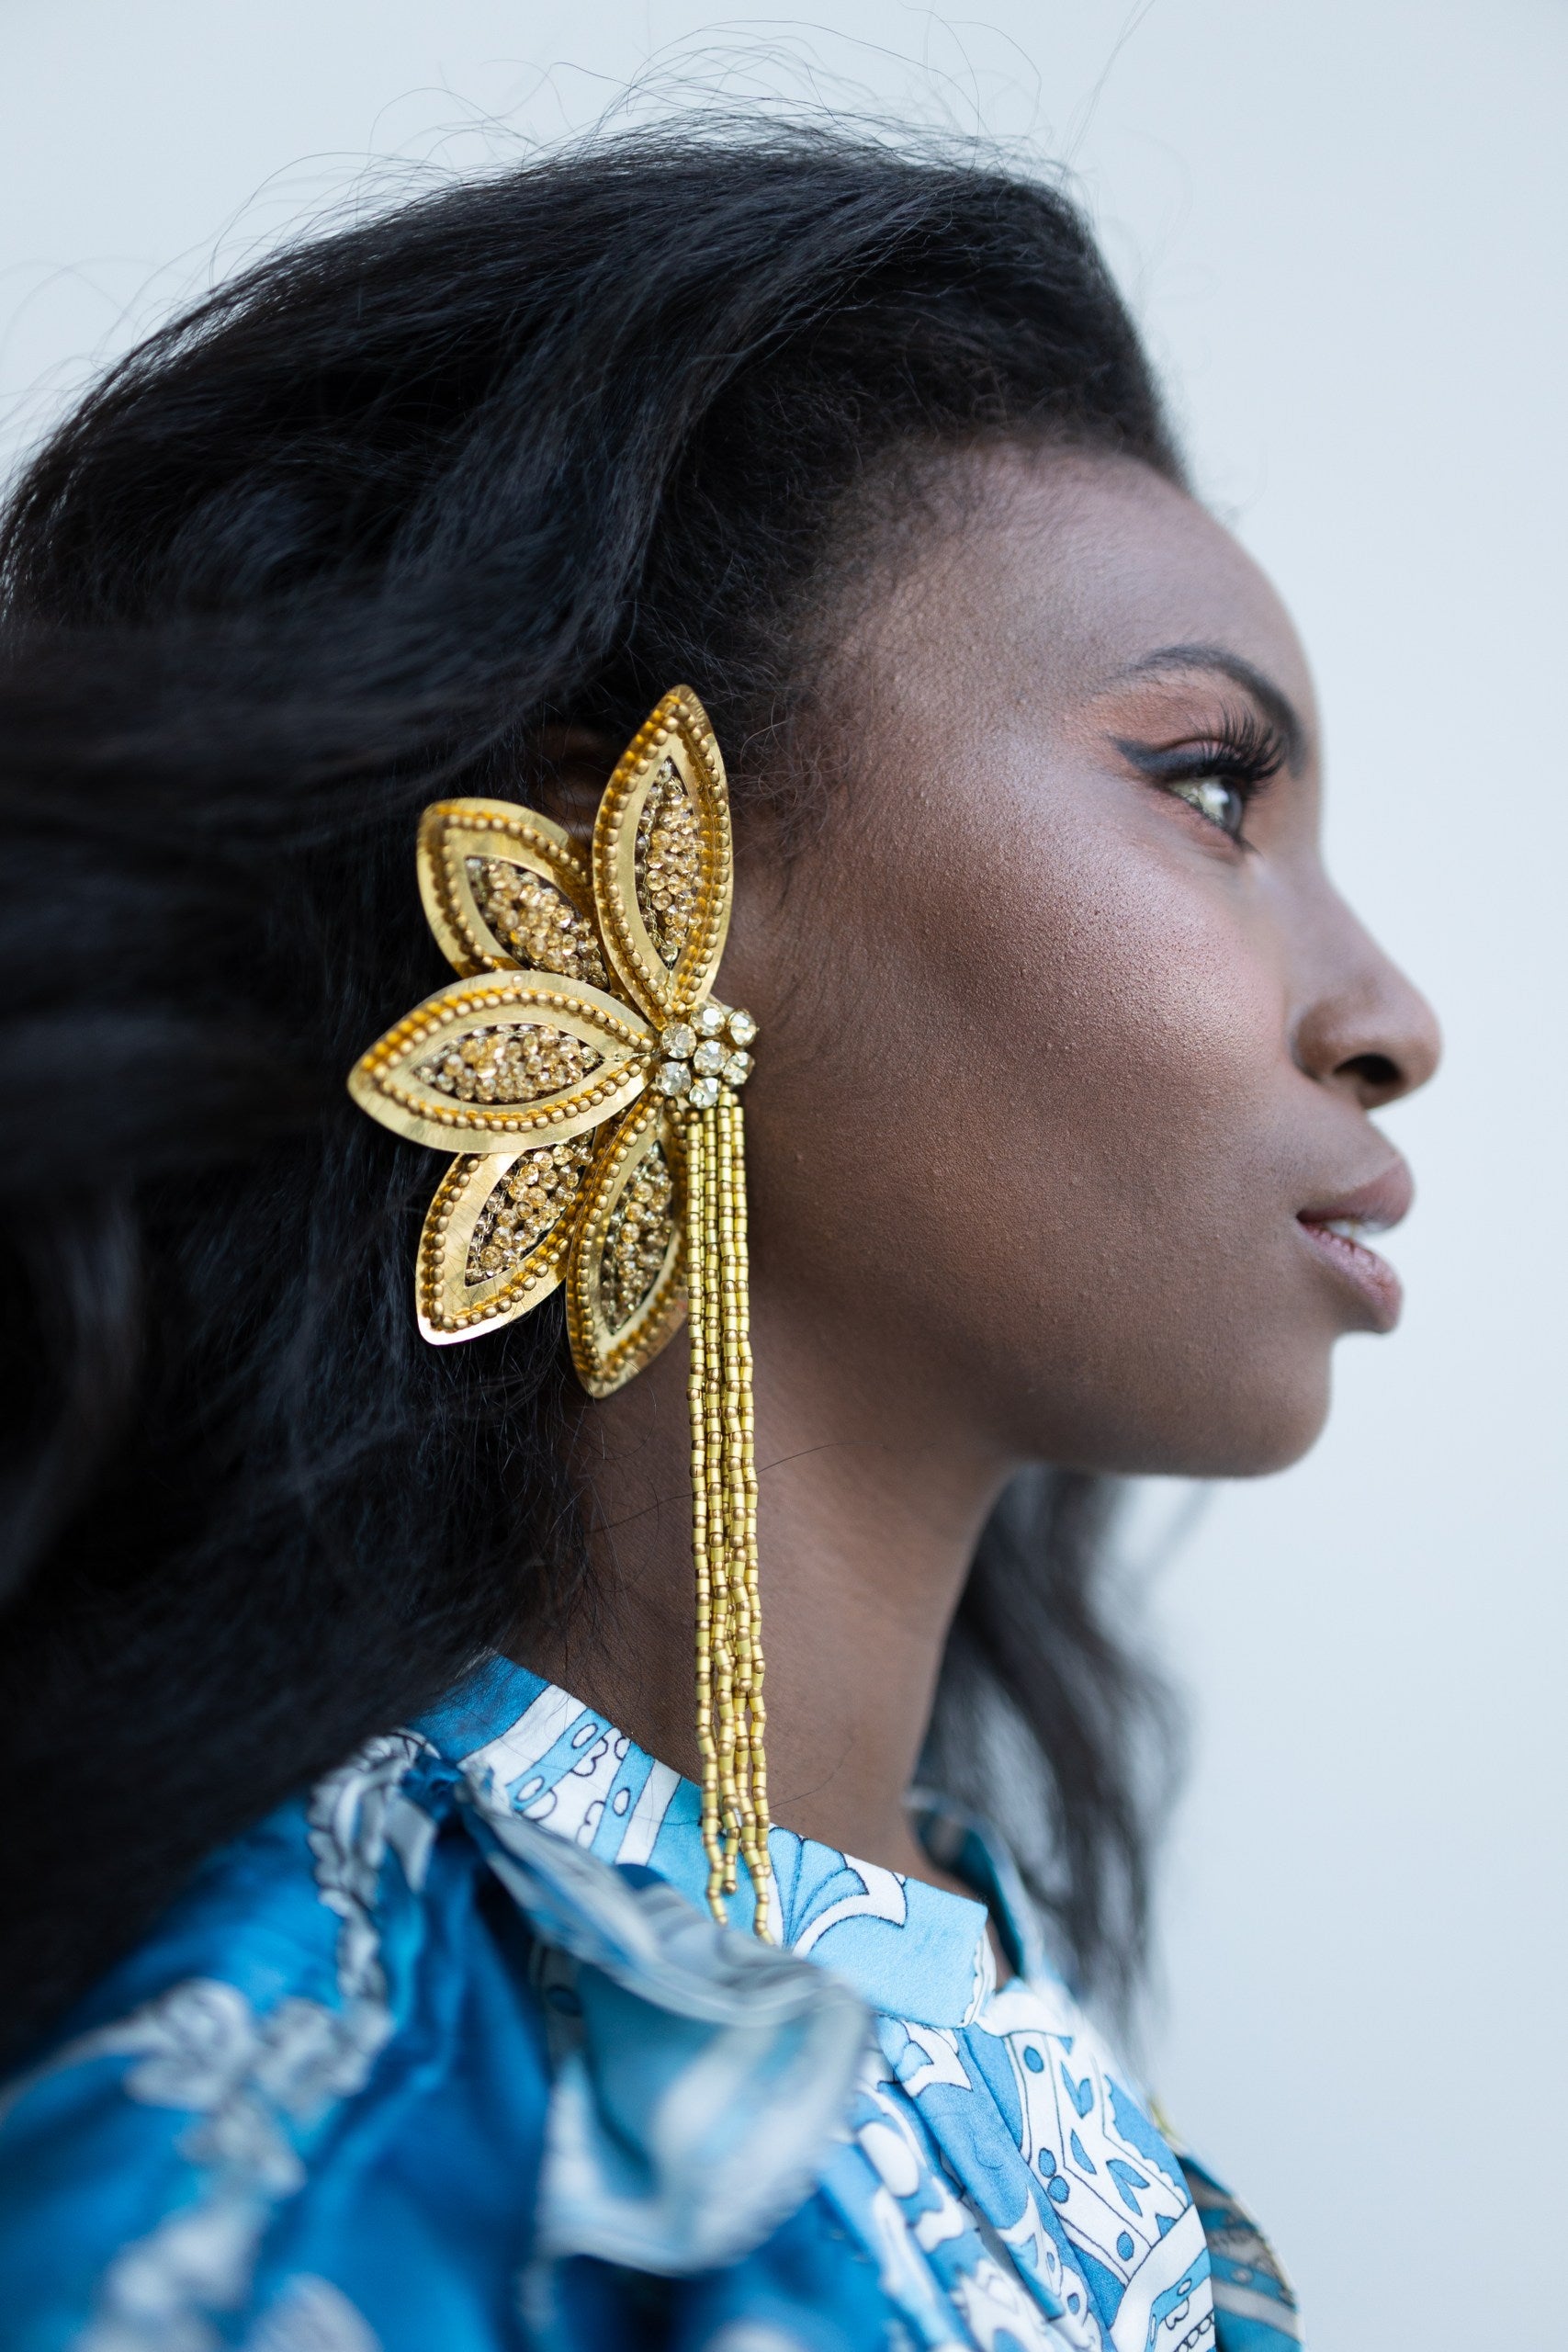 Gilded Gold Sequin Flower Earrings